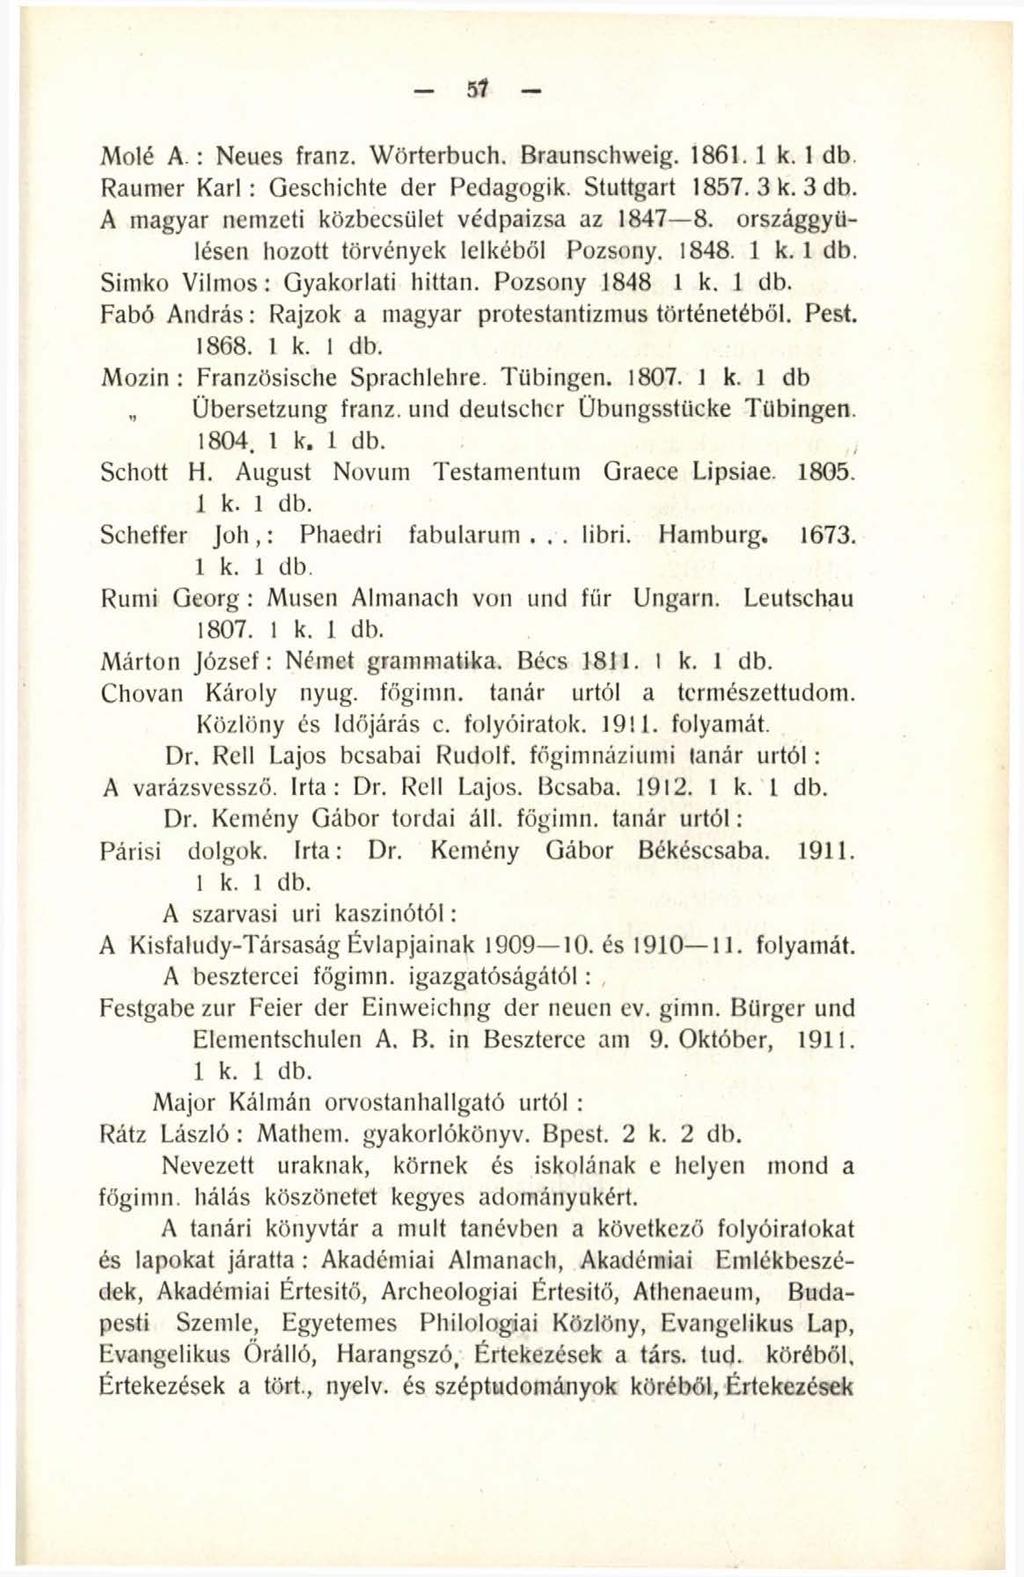 51 Mólé A.: Neues franz. Wörterbuch. Braunschweig. 1861. 1 k. 1 db. Raumer K arl: Geschichte der Pedagogik. Stuttgart 1857. 3 k. 3 db. A magyar nemzeti közbecsület védpaizsa az 1847 8.